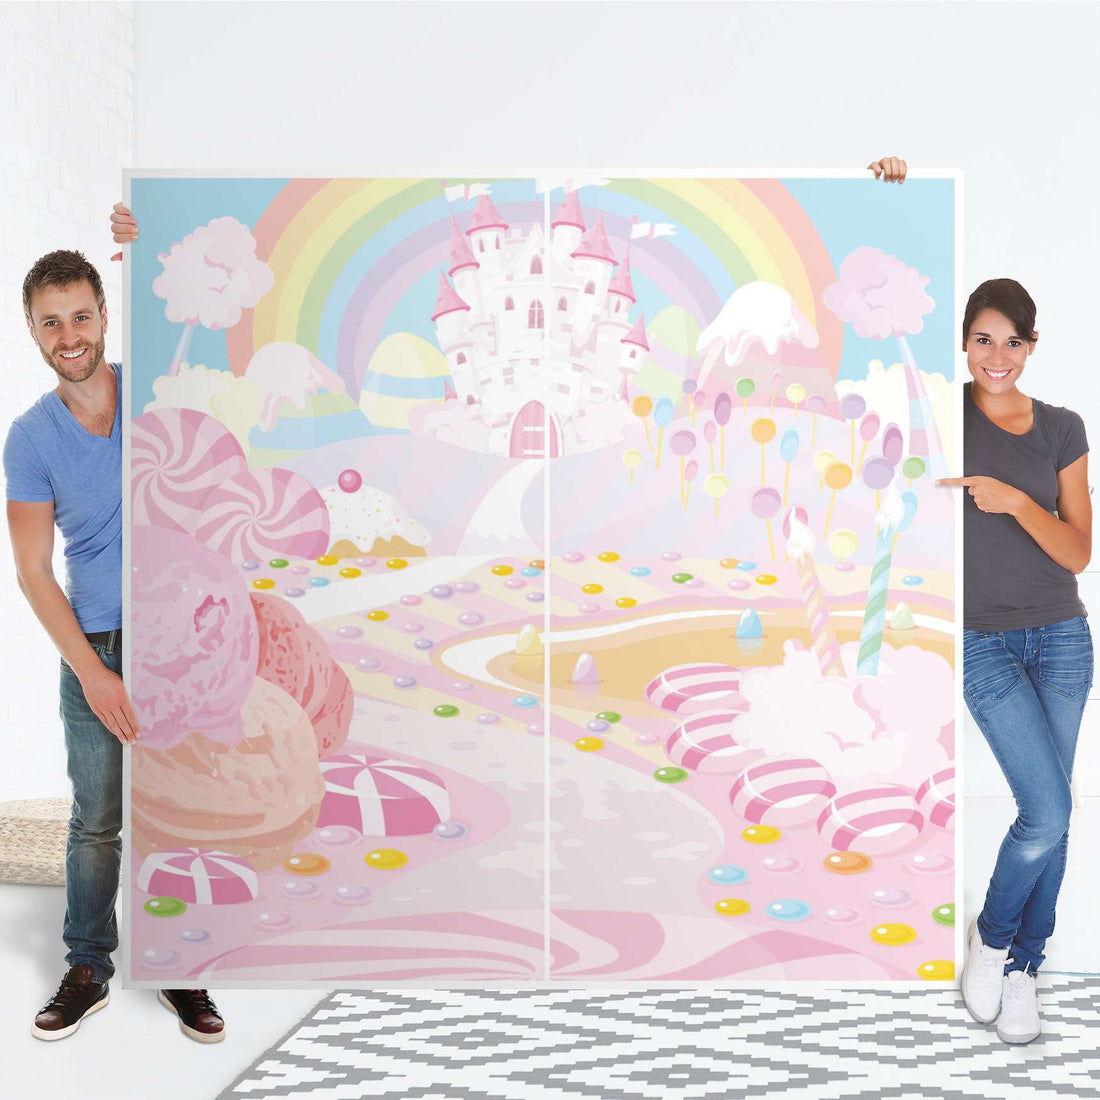 Möbel Klebefolie Candyland - IKEA Pax Schrank 201 cm Höhe - Schiebetür - Folie